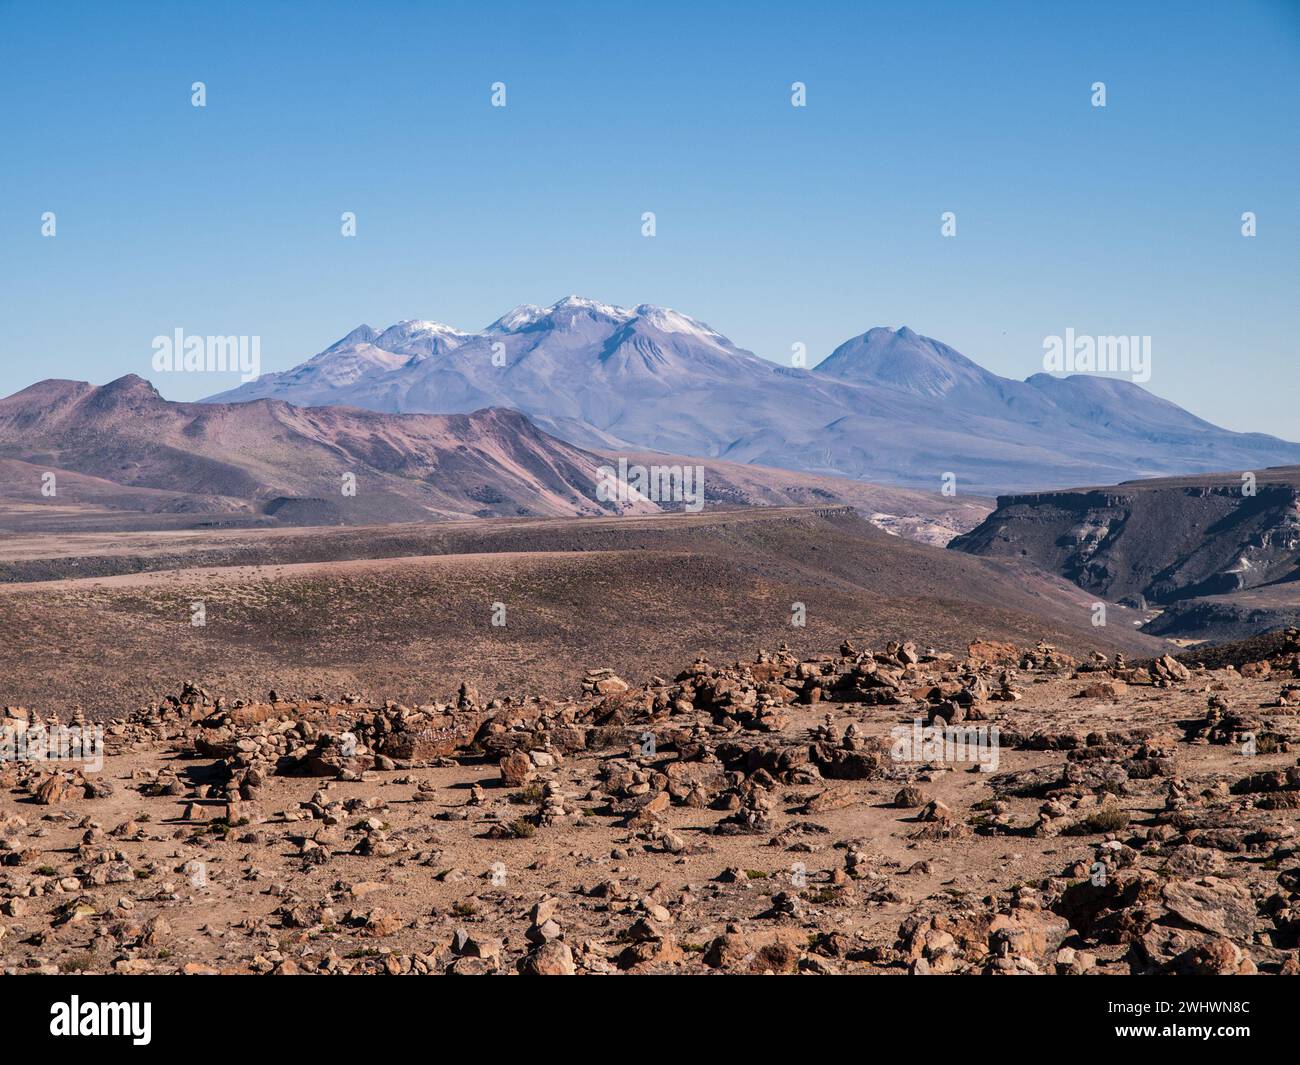 Fotografia paesaggistica del punto panoramico di Colca a più di 4.000 metri di altitudine con la cima delle montagne andine innevate, in Perù Foto Stock